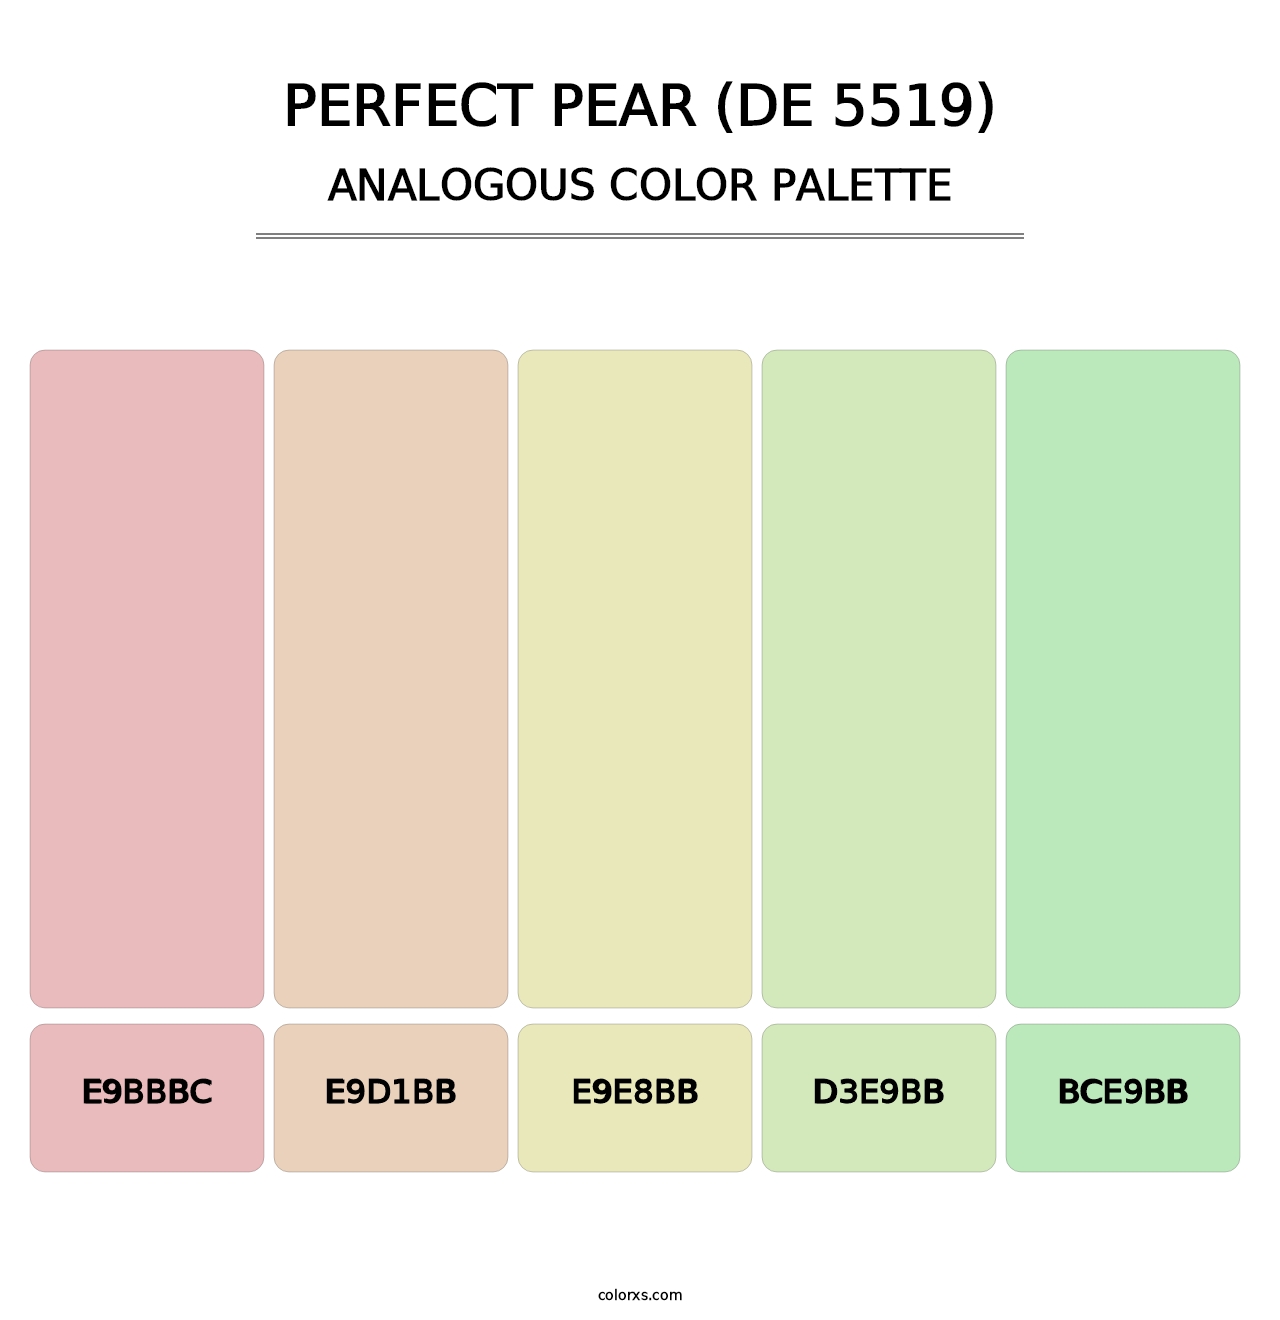 Perfect Pear (DE 5519) - Analogous Color Palette